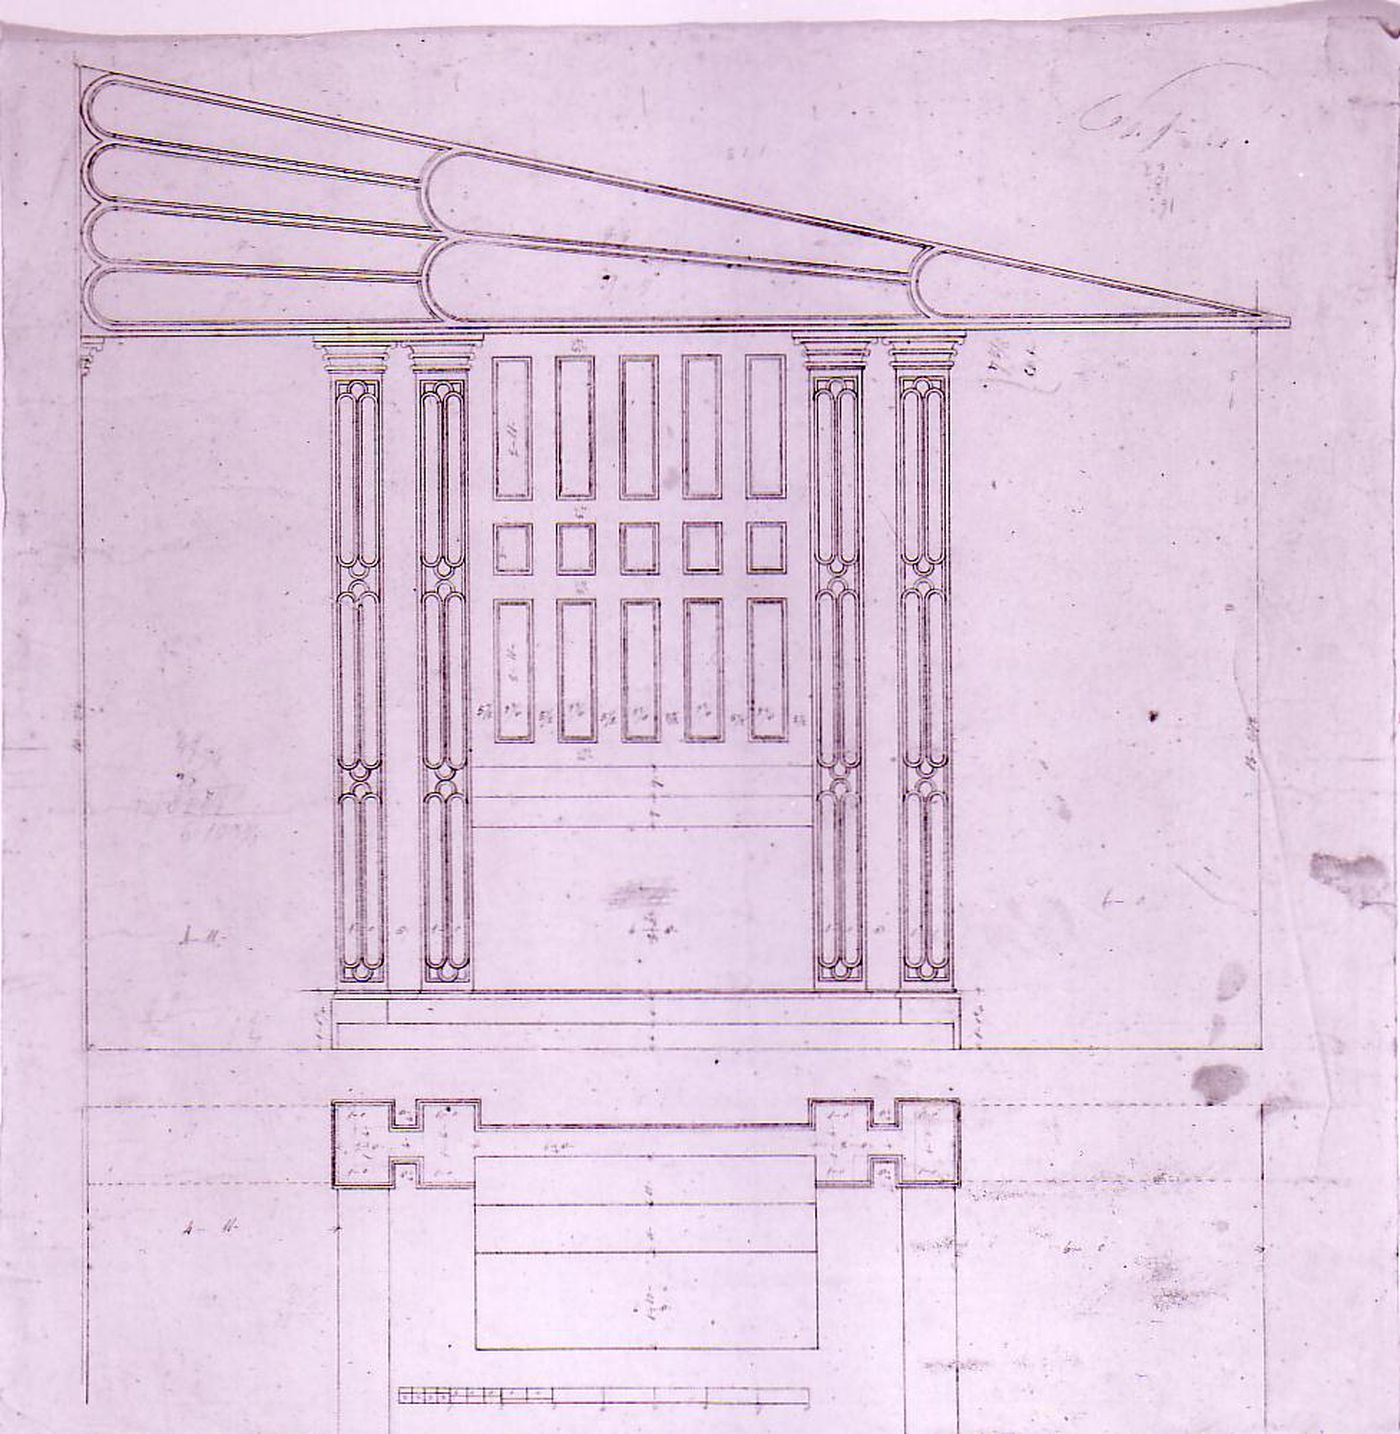 Plan and elevation for a side chapel [?] for Notre-Dame de Montréal